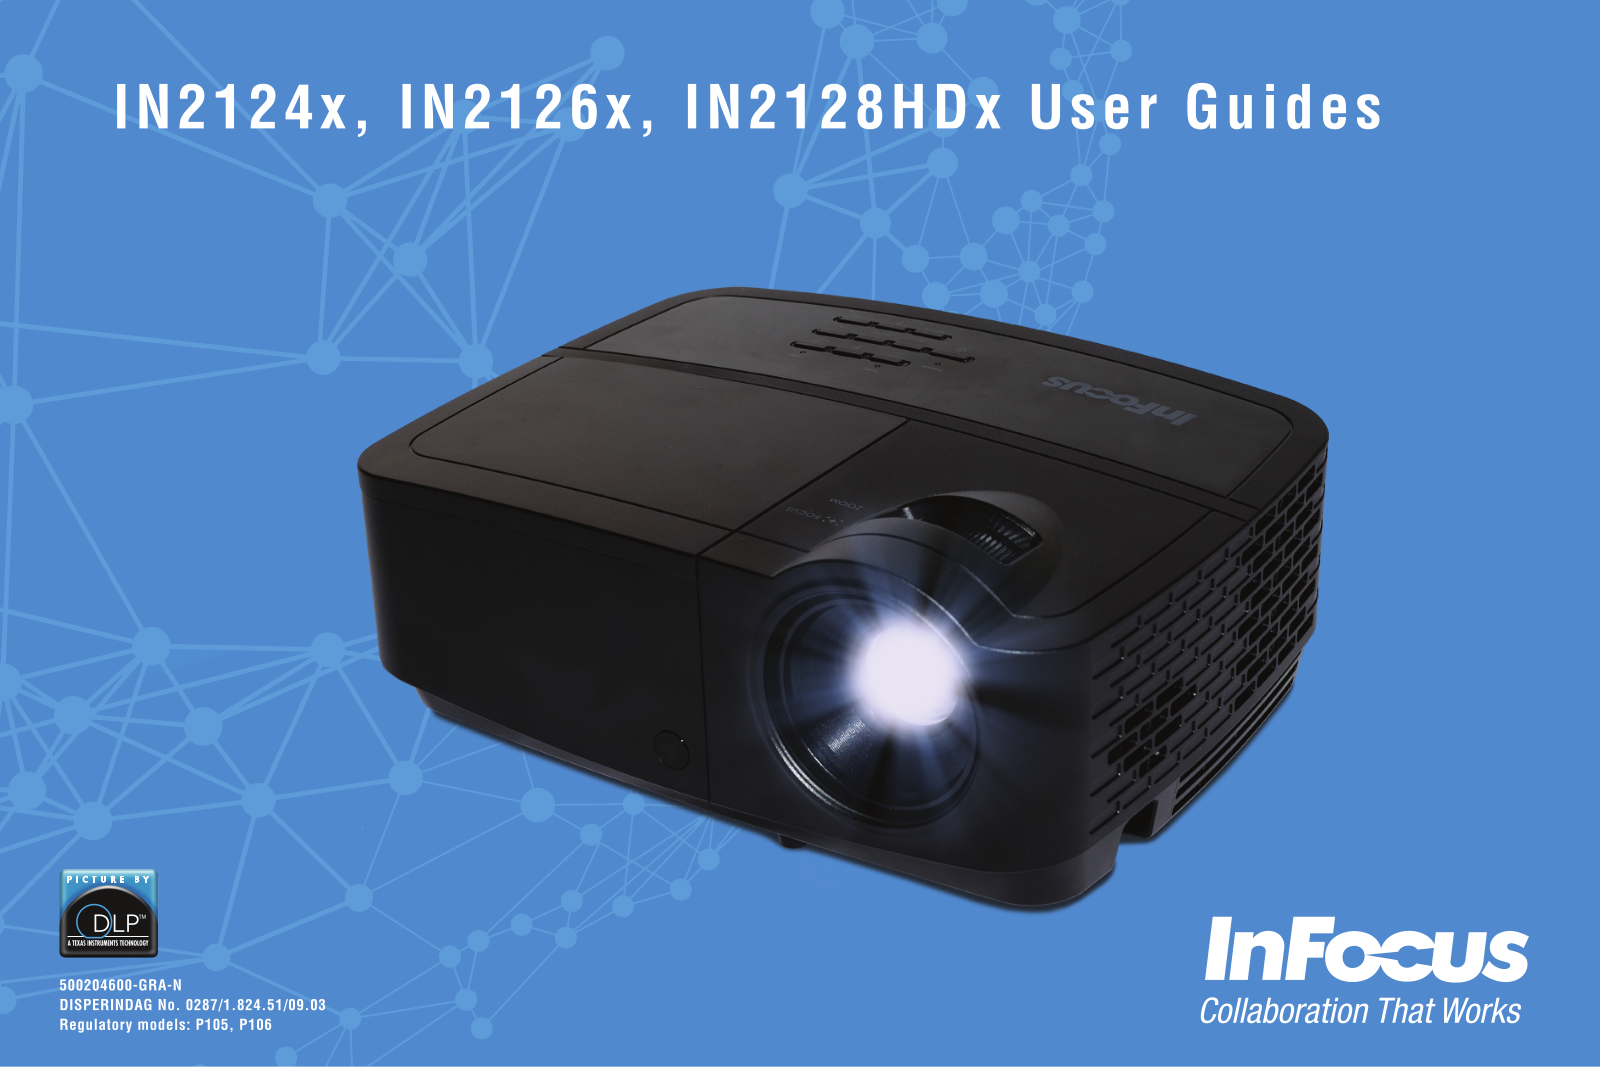 InFocus IN2128HDx, IN2126x, IN2124x User Manual